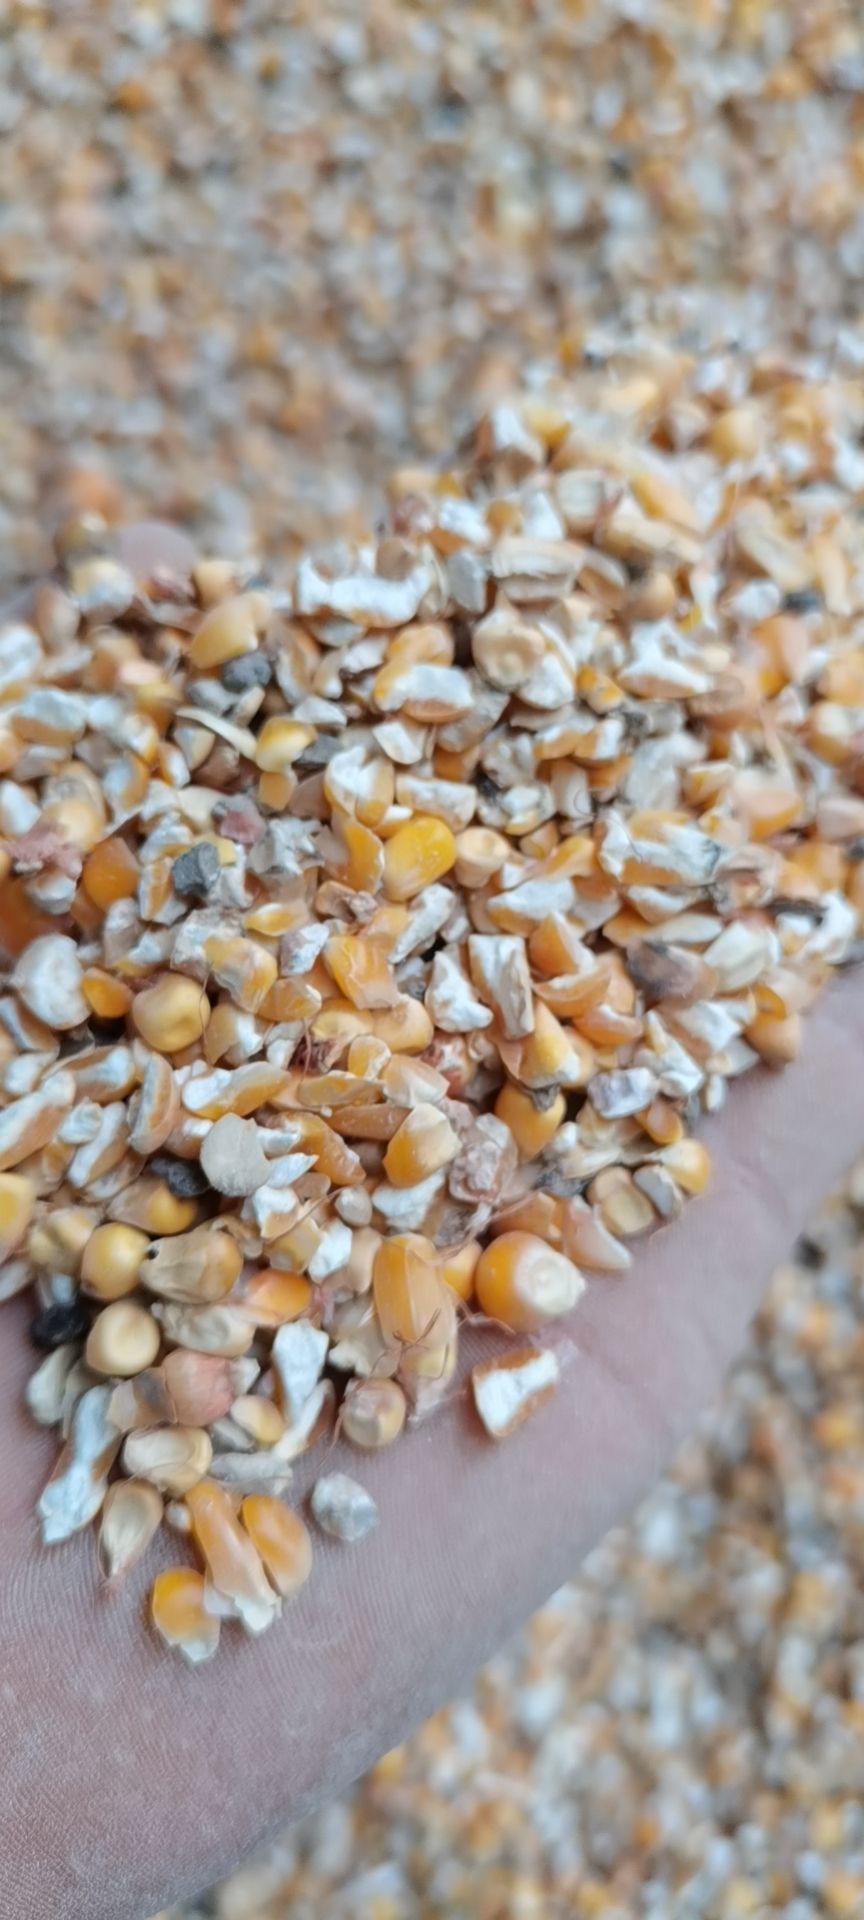 [干玉米批发]干玉米 碎玉米价格1500元/吨 - 惠农网